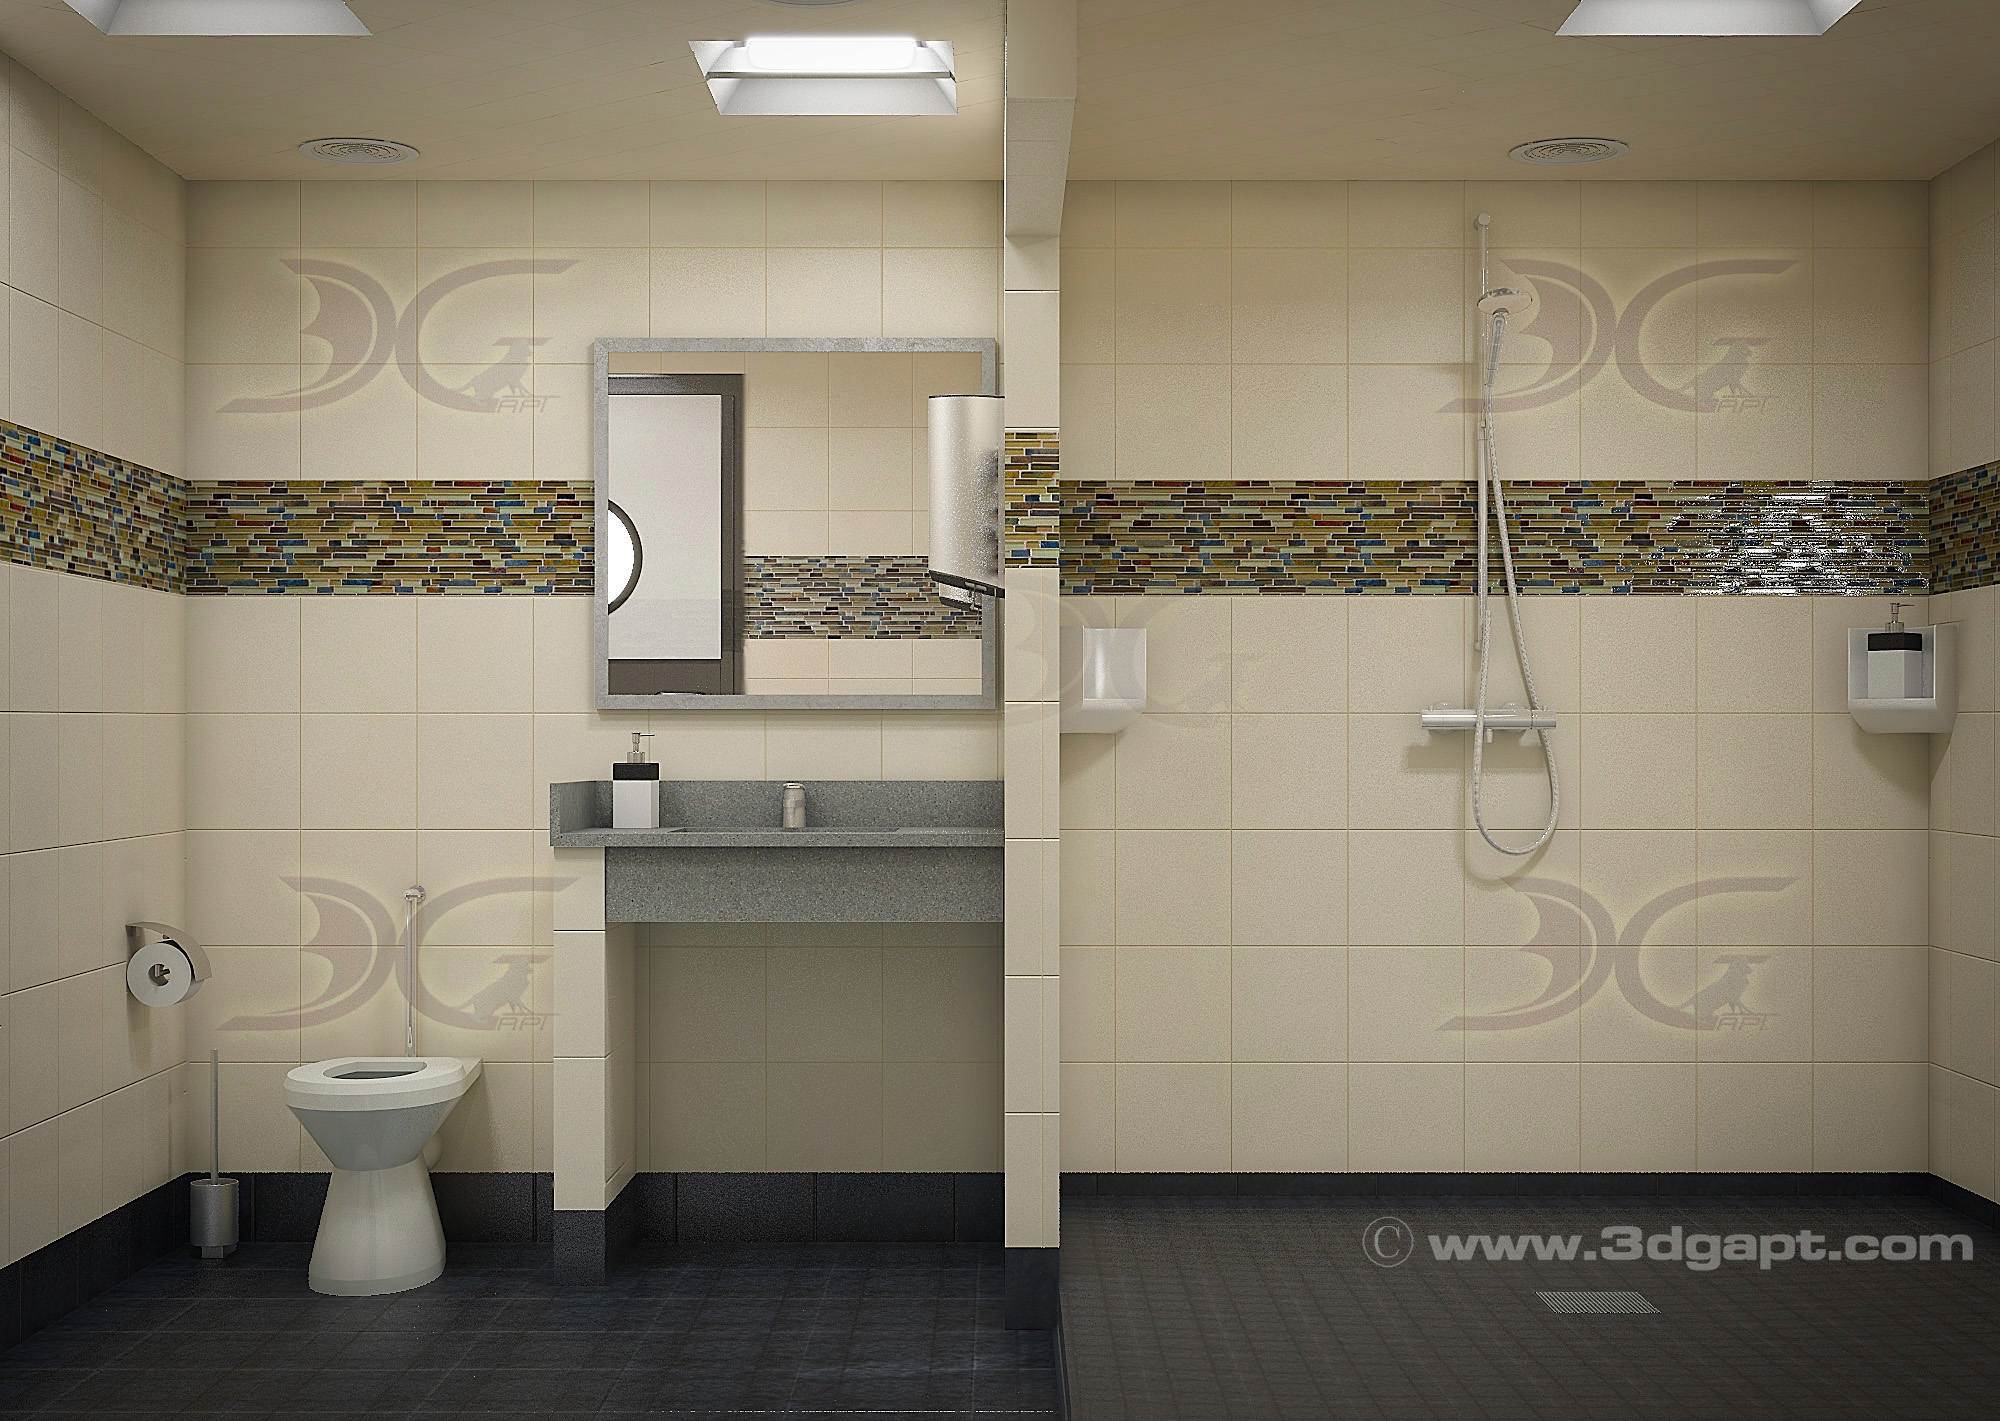 Architecture Interior Container Bathrooms0014